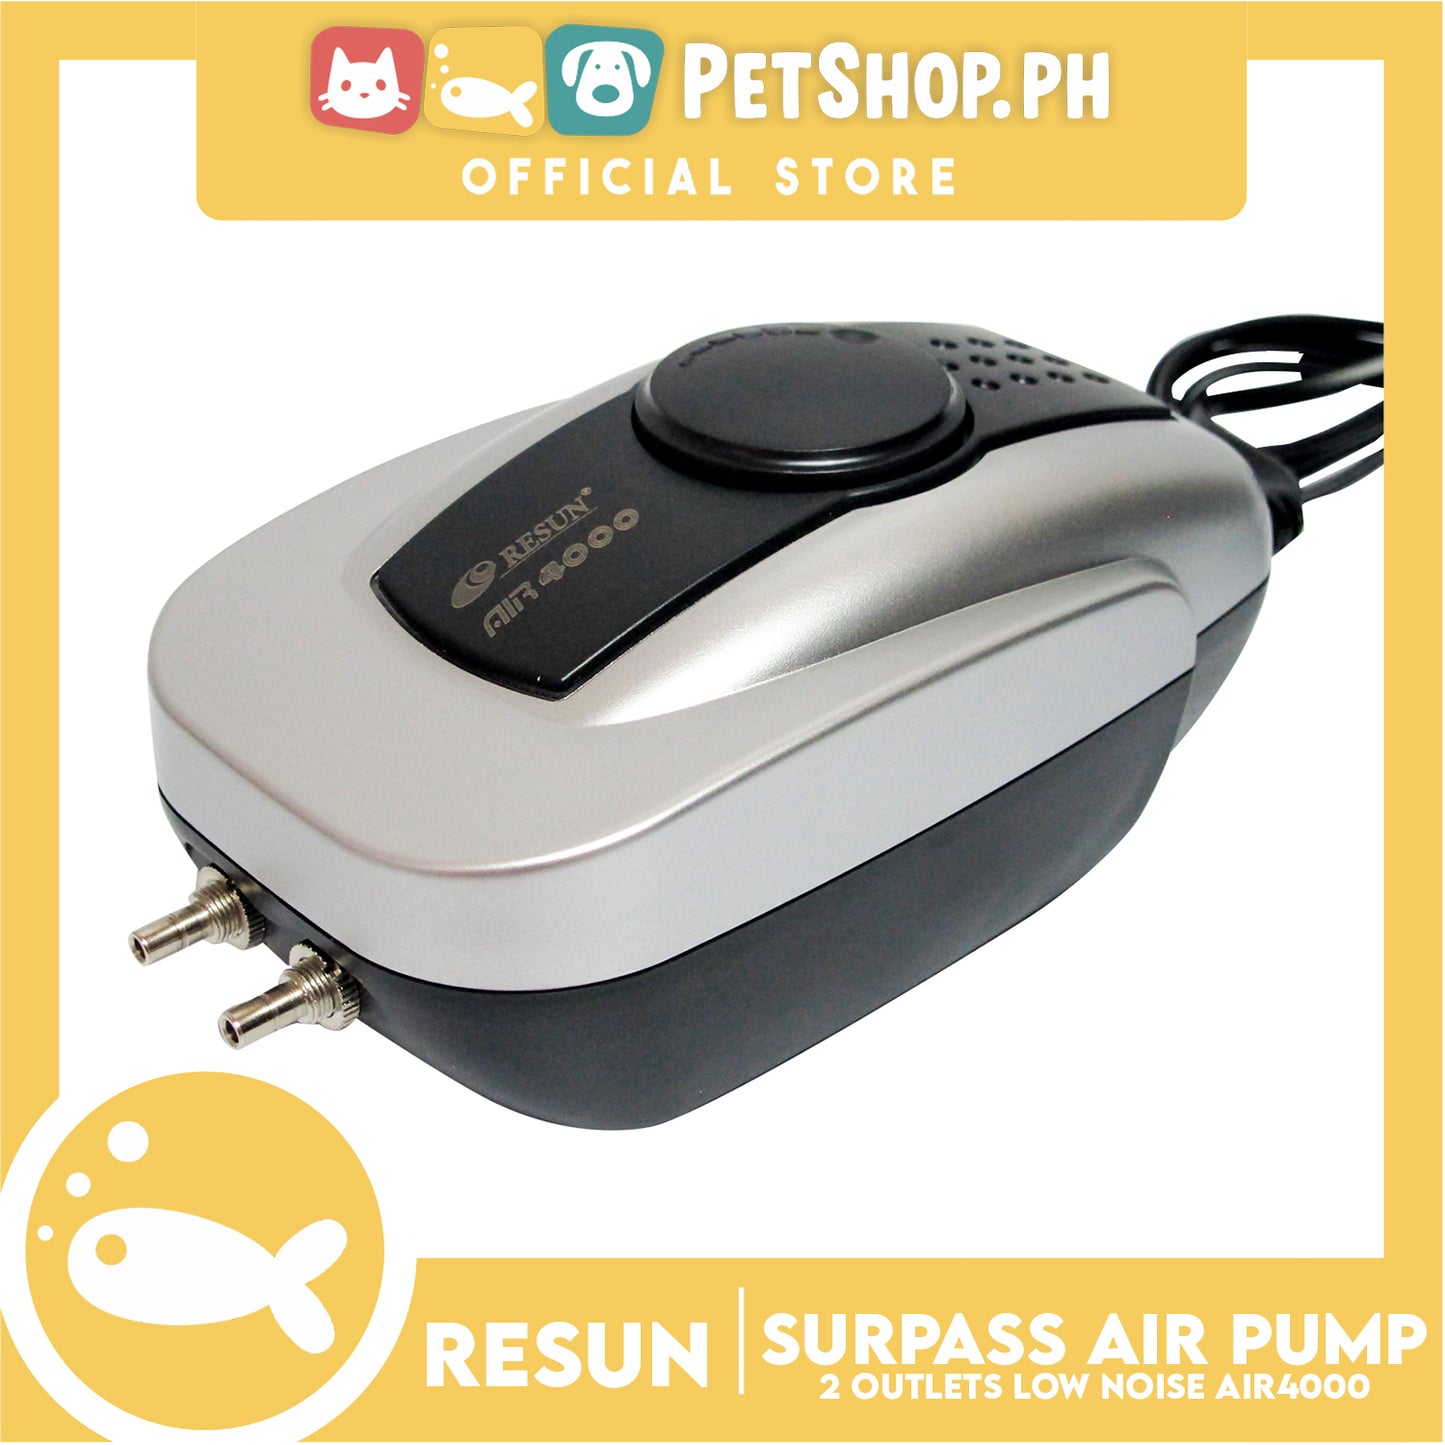 Resun Surpass Air Pump AIR4000